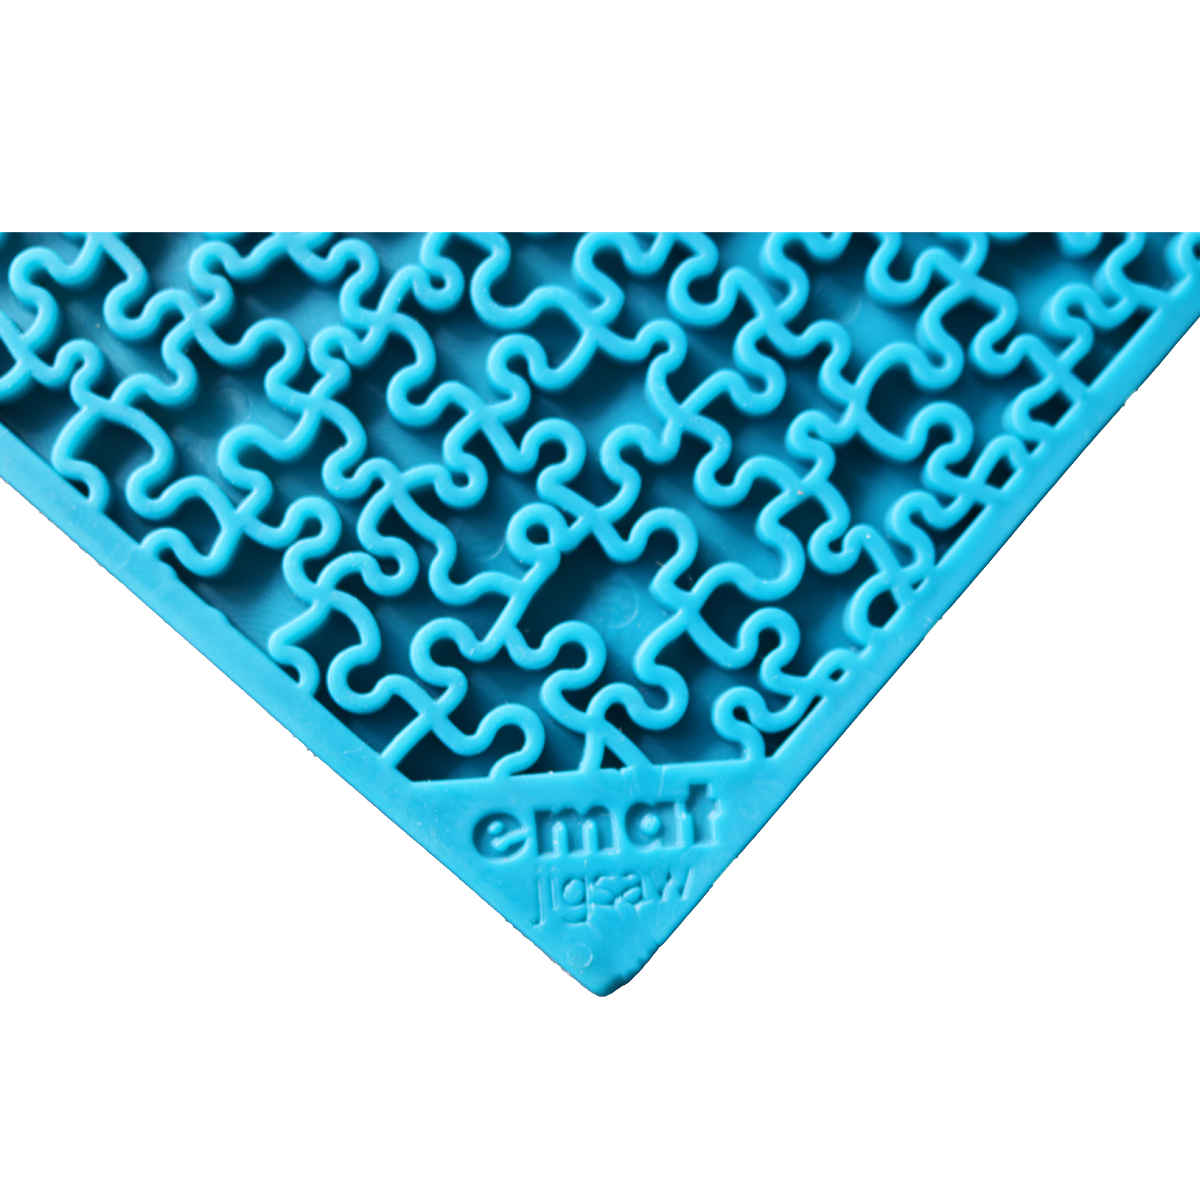 SodaPup Jigsaw Lick Mat - Blue